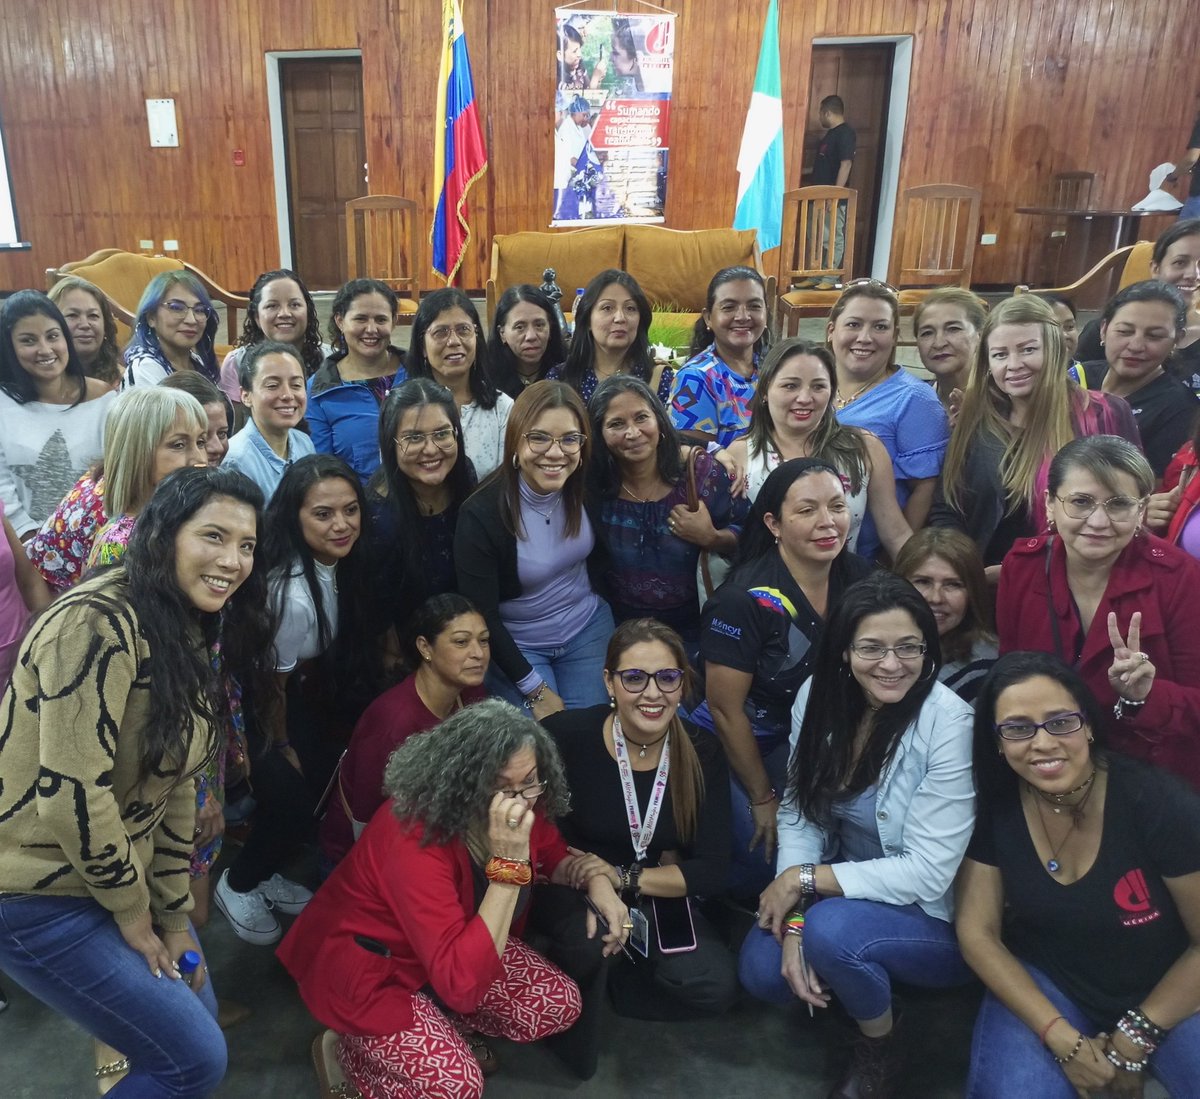 #10Abr Desde Mérida celebramos el Día Mundial de la Ciencia y la Tecnología resaltando el aporte de las mujeres y la visibilidad de sus aportes en diferentes áreas del conocimiento, impulsando también la conformación de los Consejos Feministas Sectoriales.

#MujeresEnLaCiencia